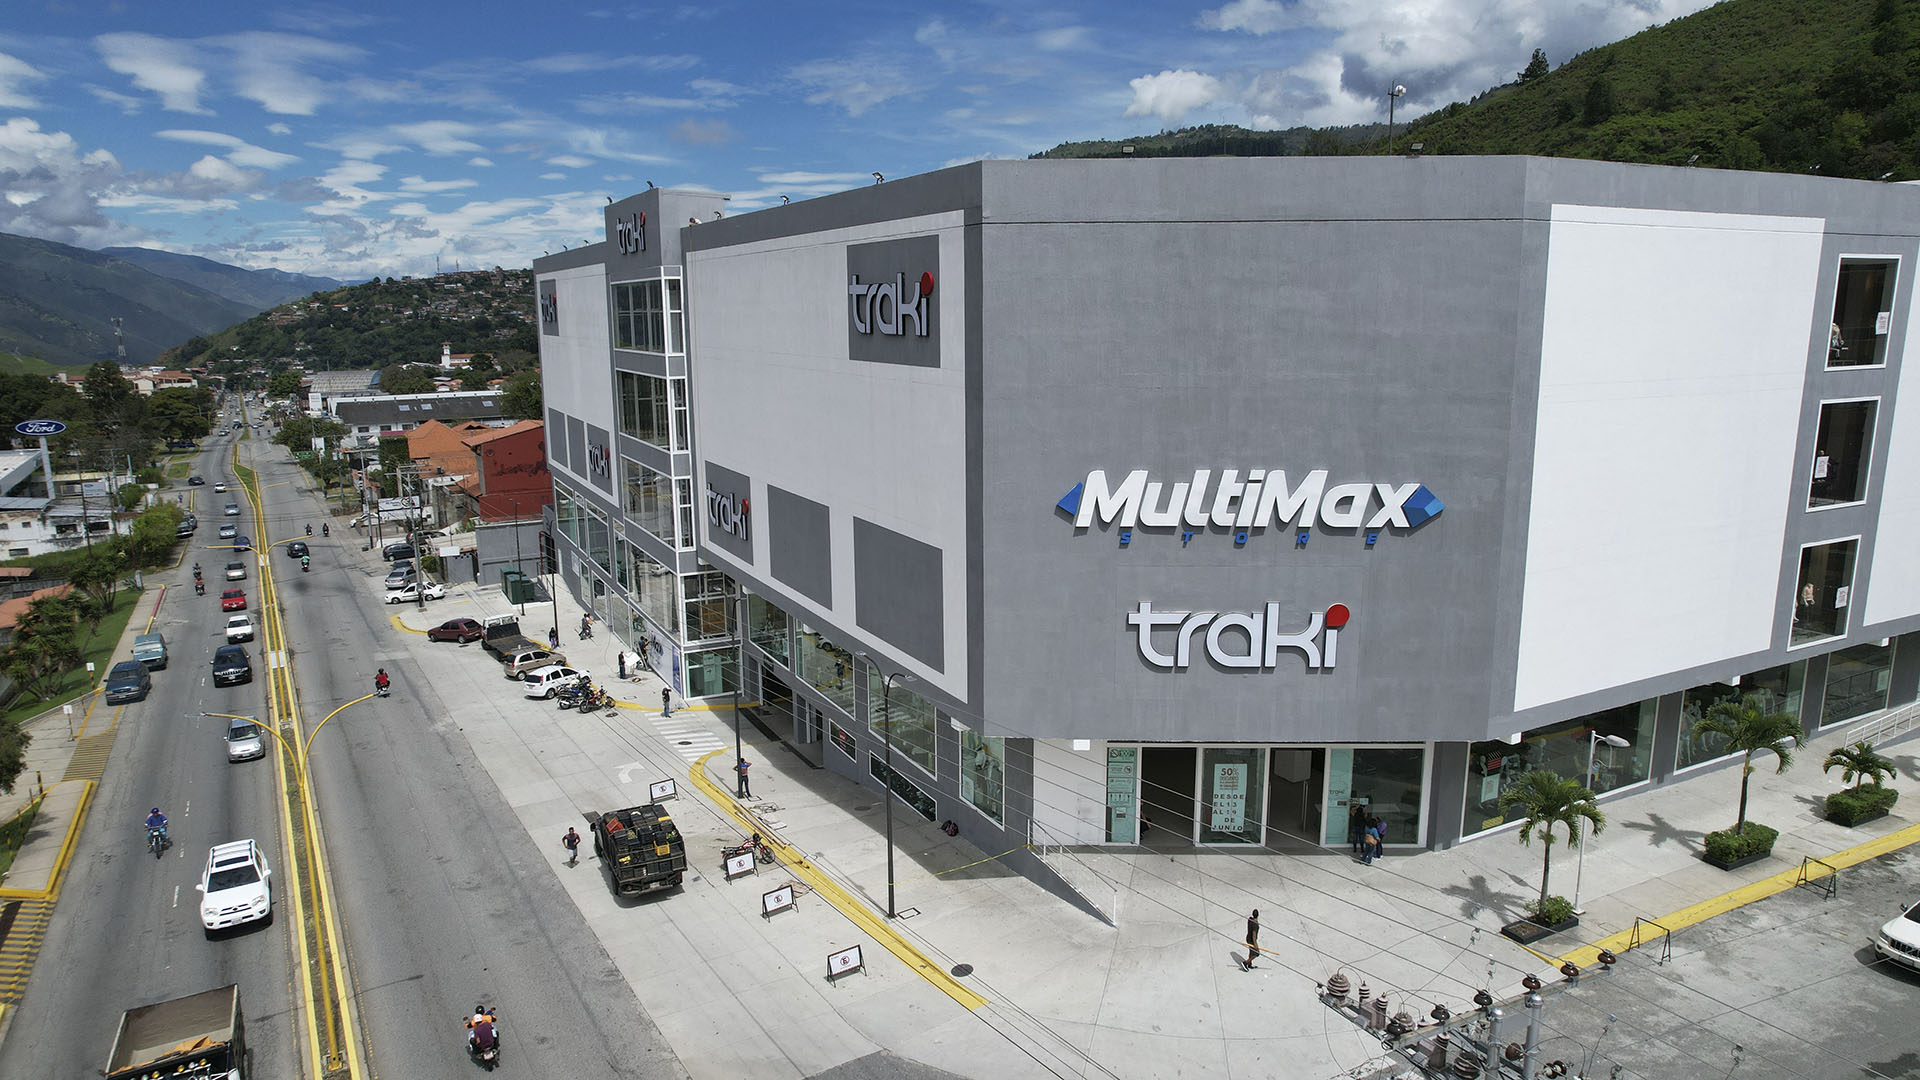 MultiMax Mérida próxima apertura número 22 en Venezuela